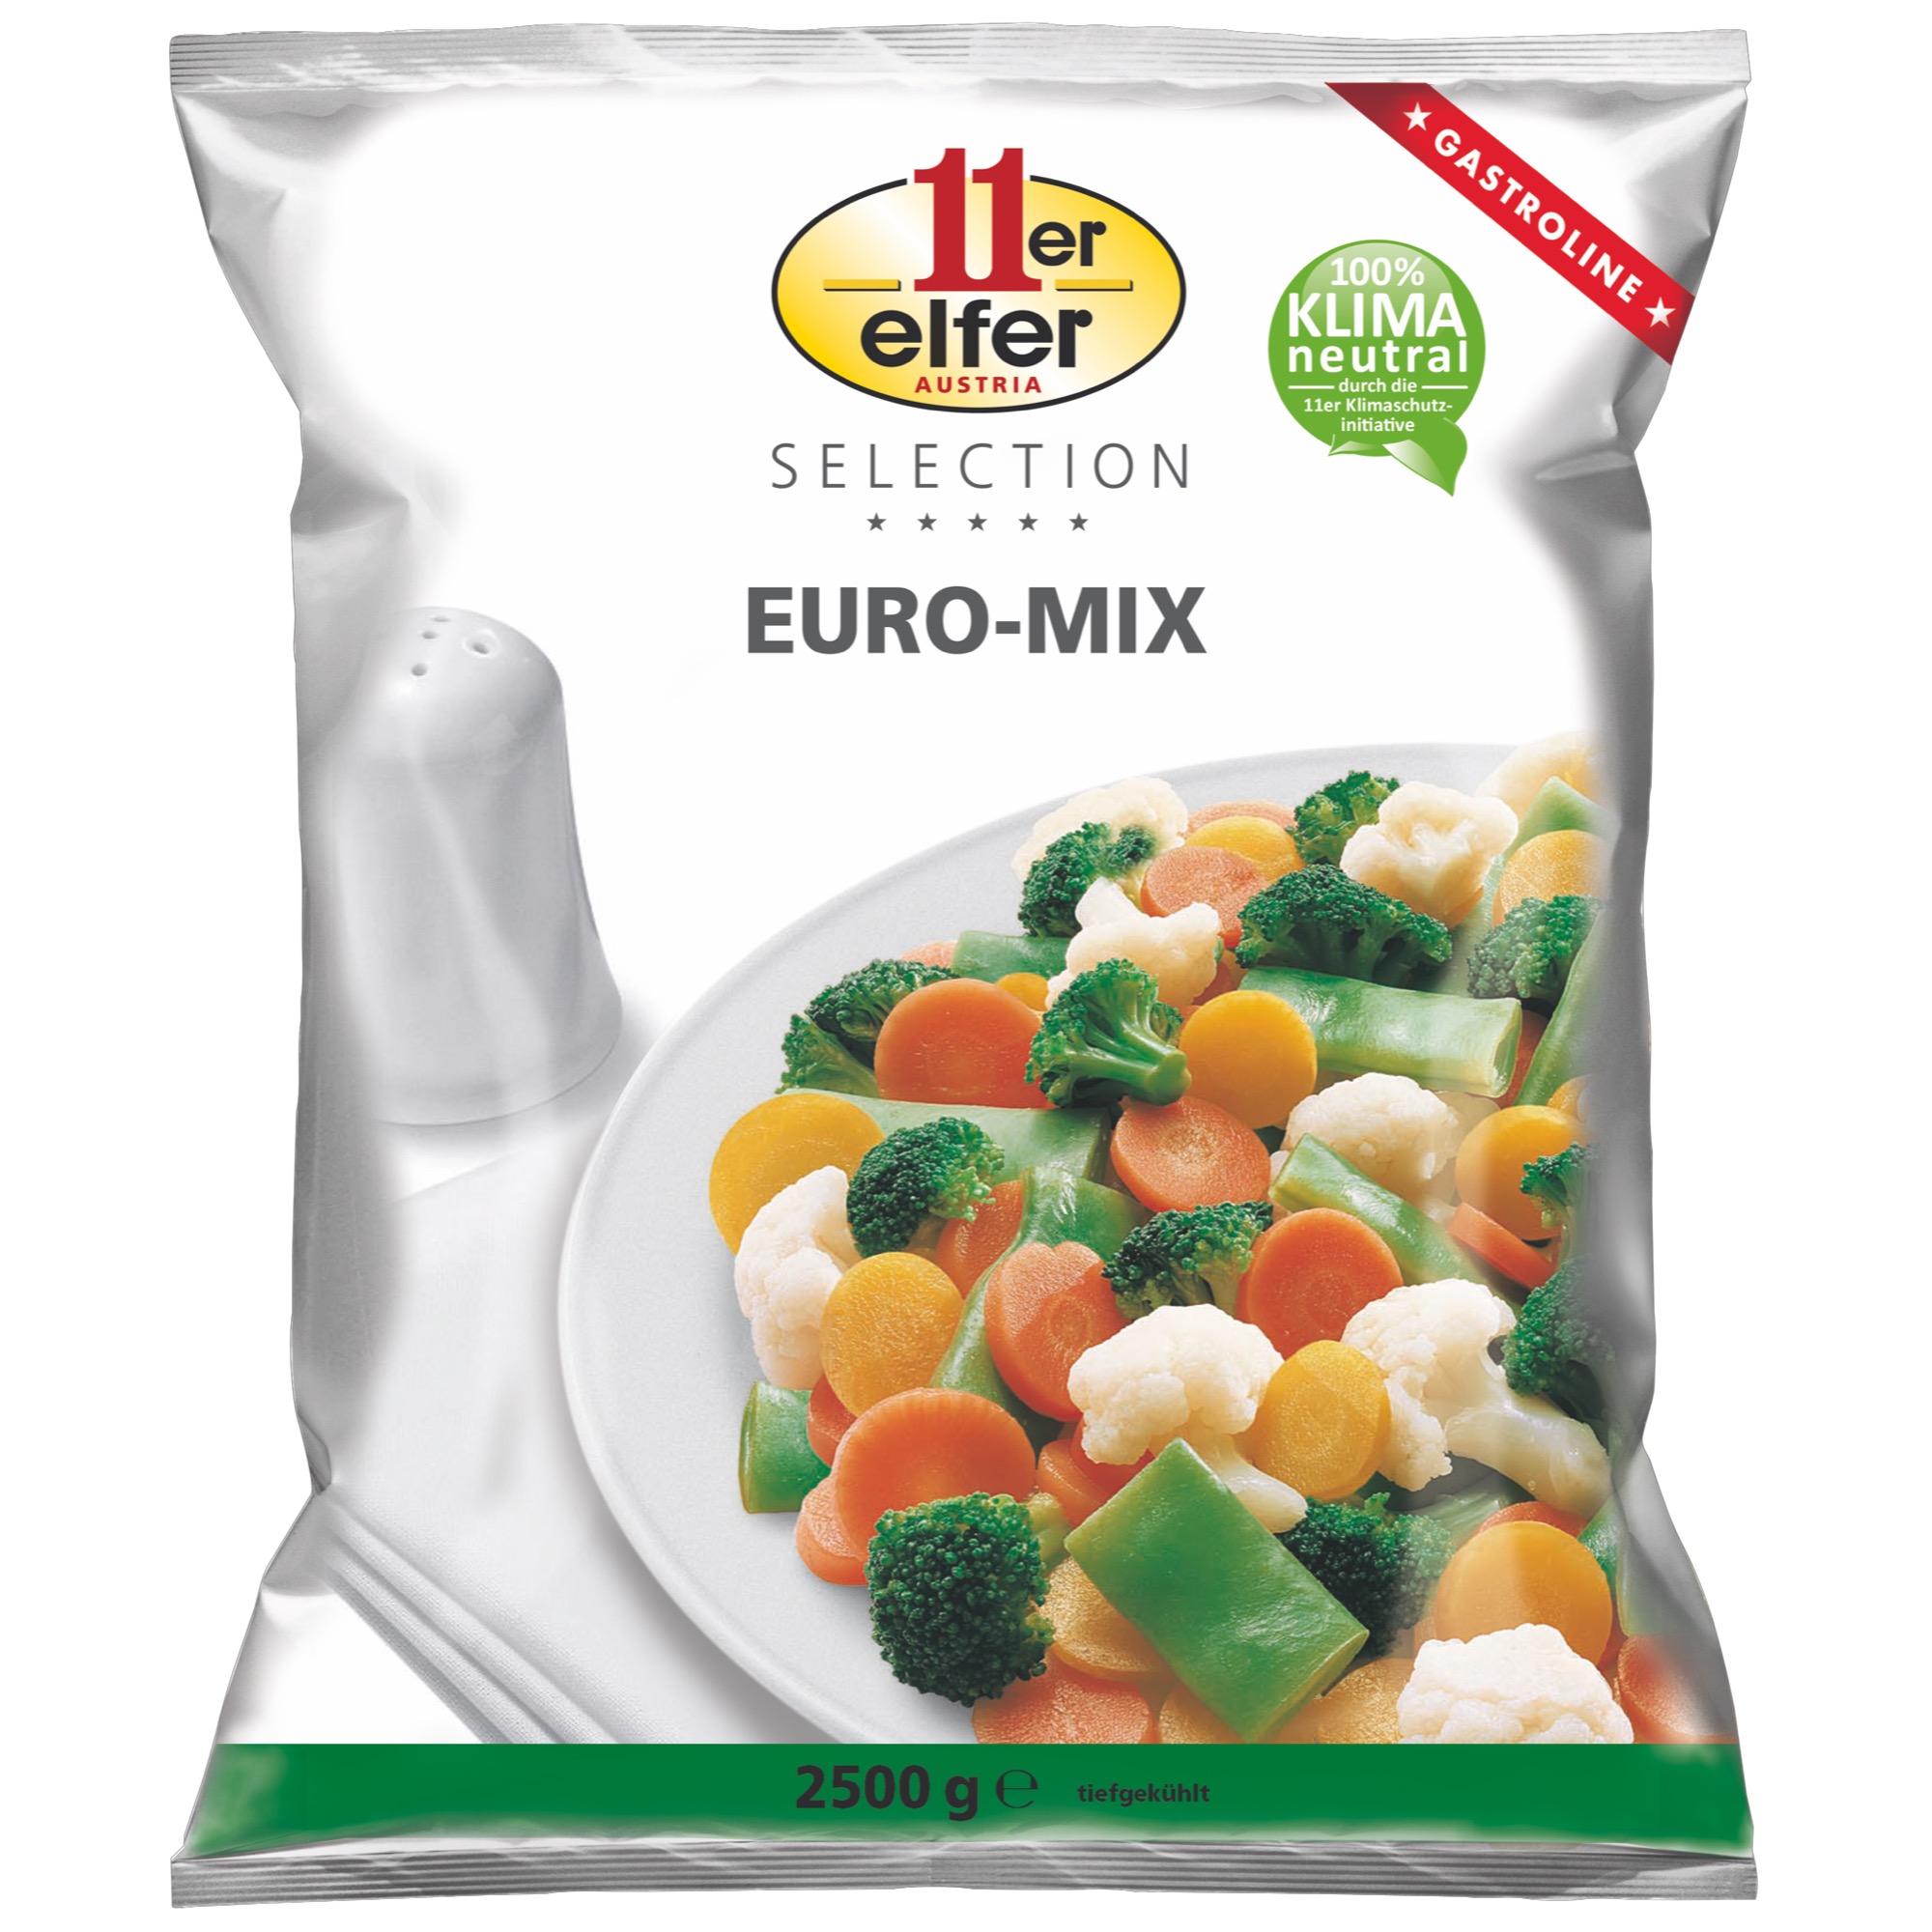 11er Select. Euromix mraz. 2,5kg